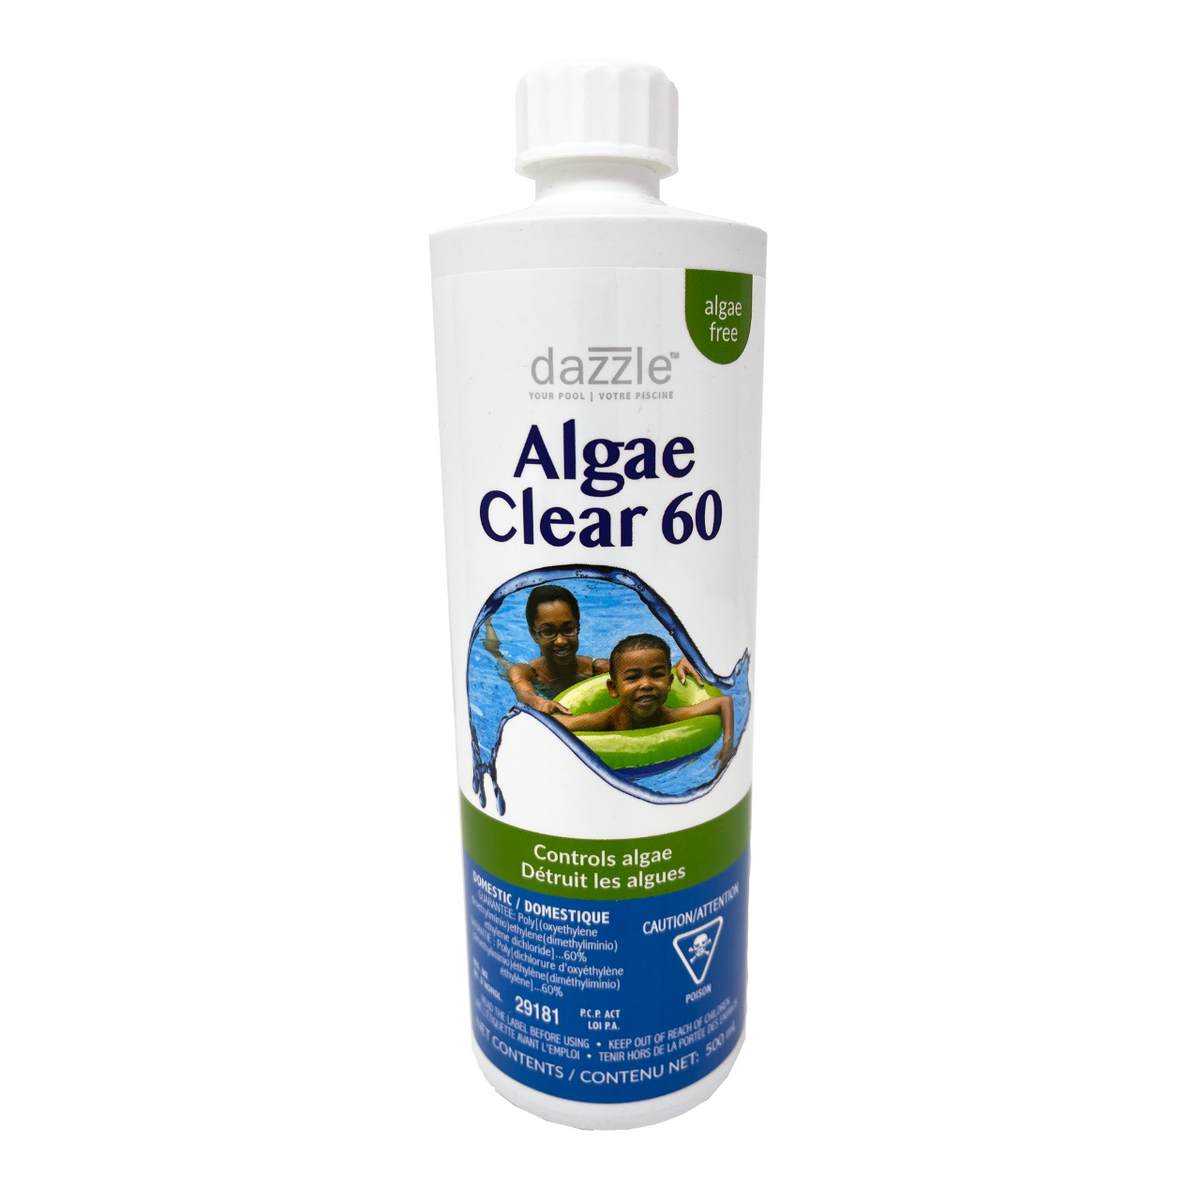 Dazzle™ Algae Clear 60 - Controls algae